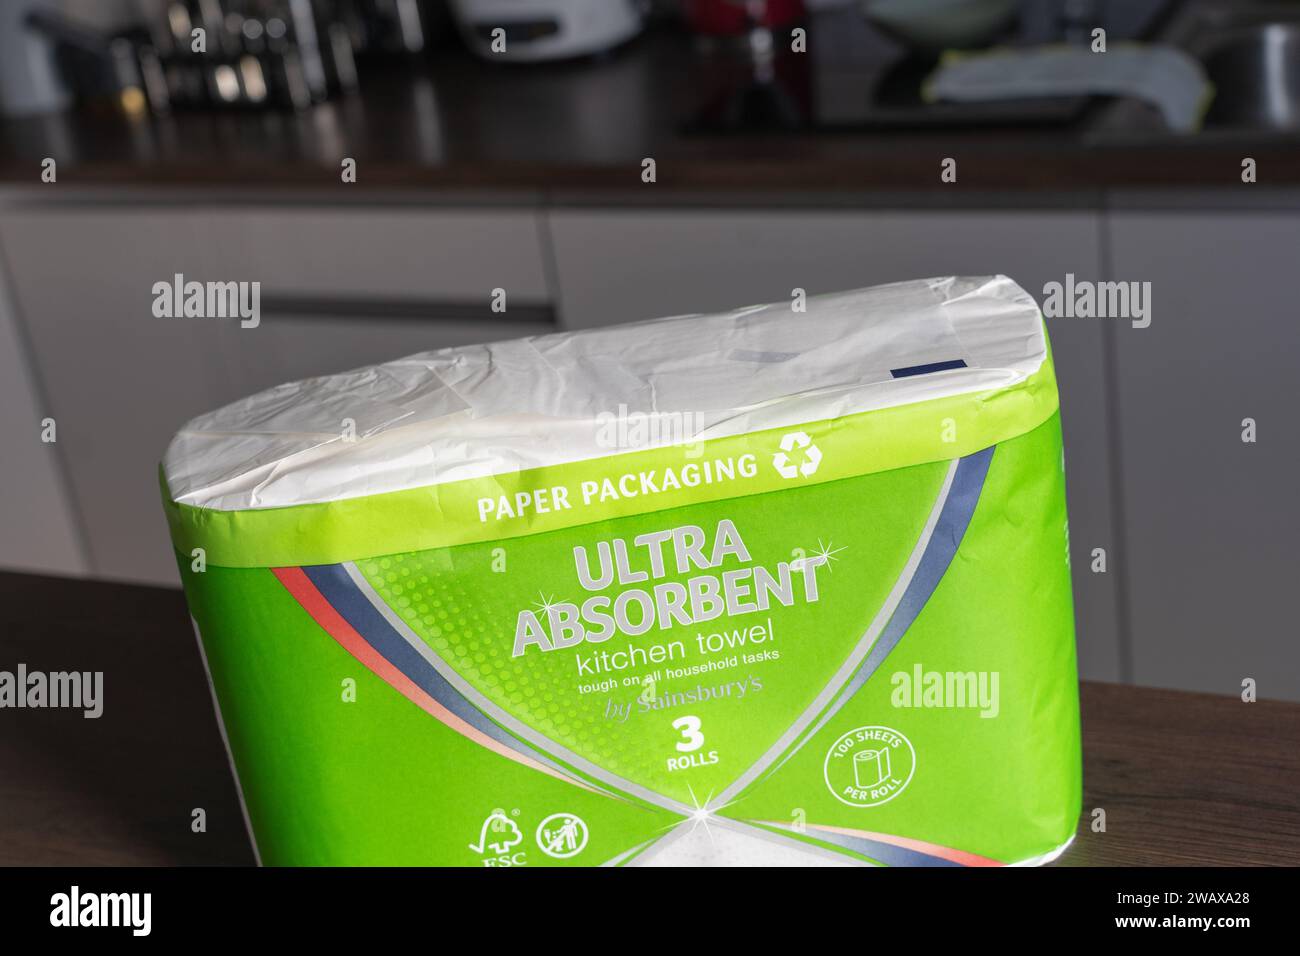 Emballage de serviettes de cuisine de marque Sainsbury avec emballage en papier et symbole de recyclage, Royaume-Uni. Concept : réduction des déchets, réduction des déchets plastiques Banque D'Images